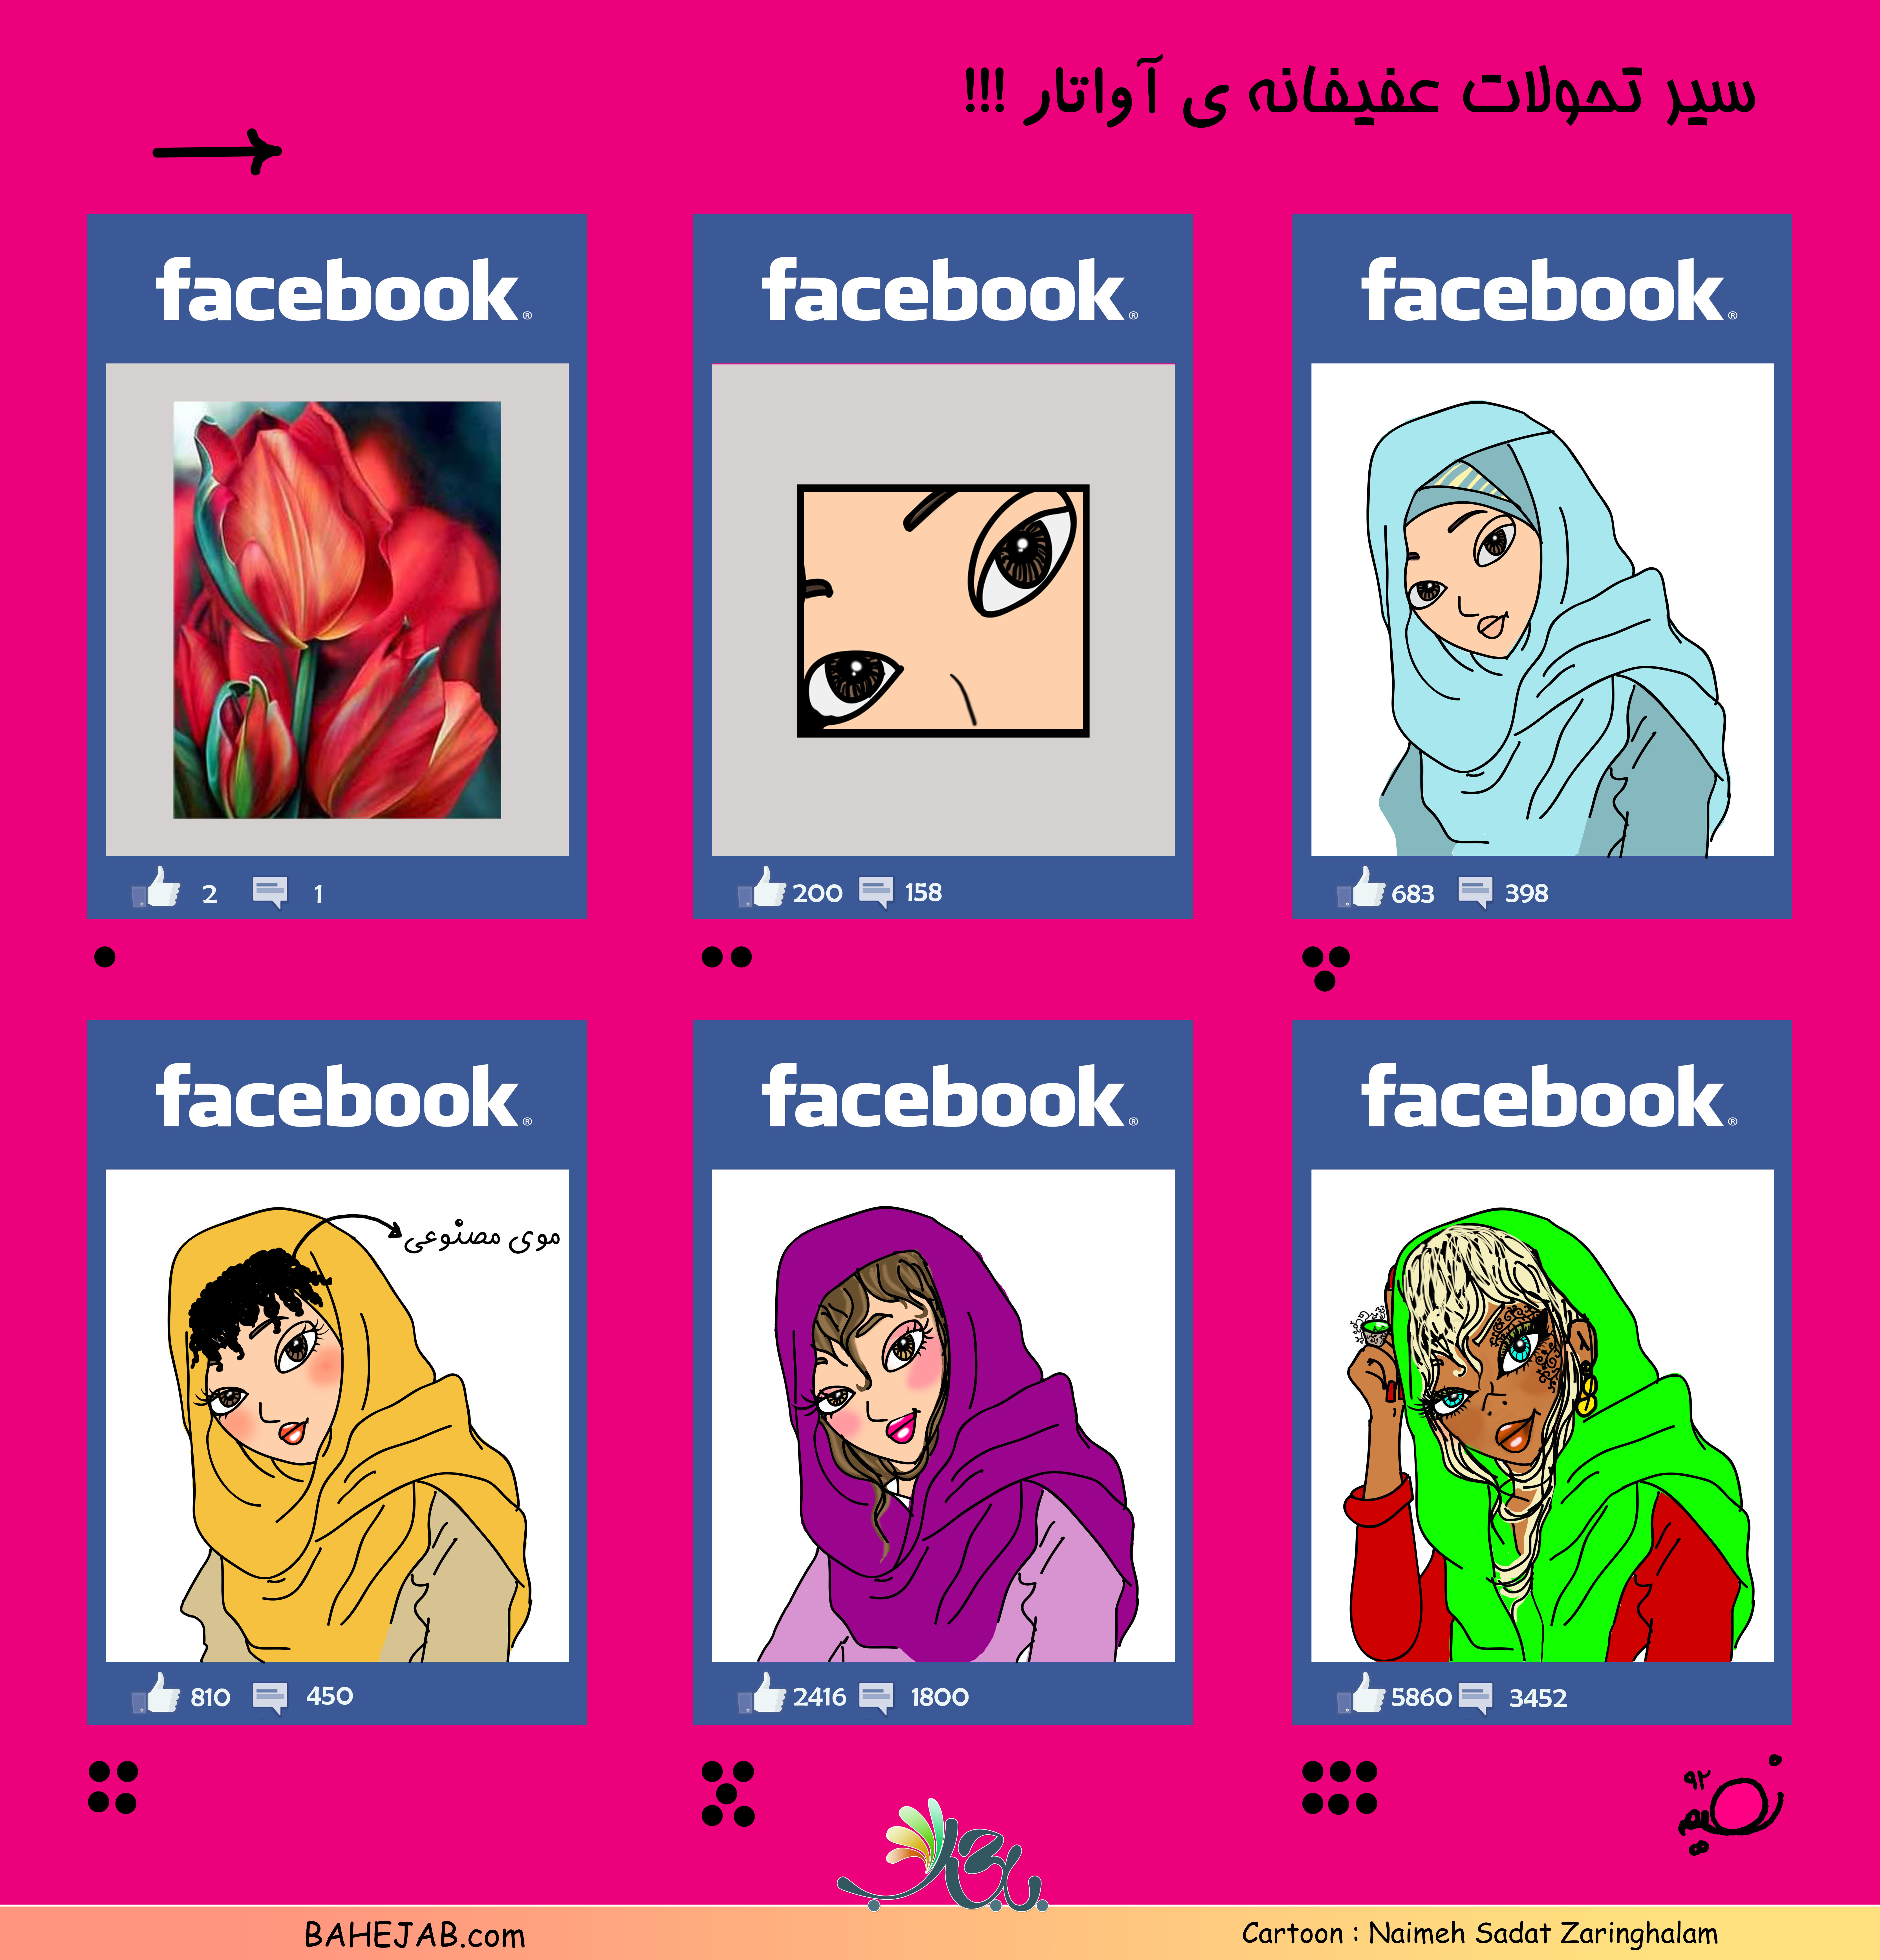 Facebook-(www.nooriazbehesht.ir).jpg (8547×8910)